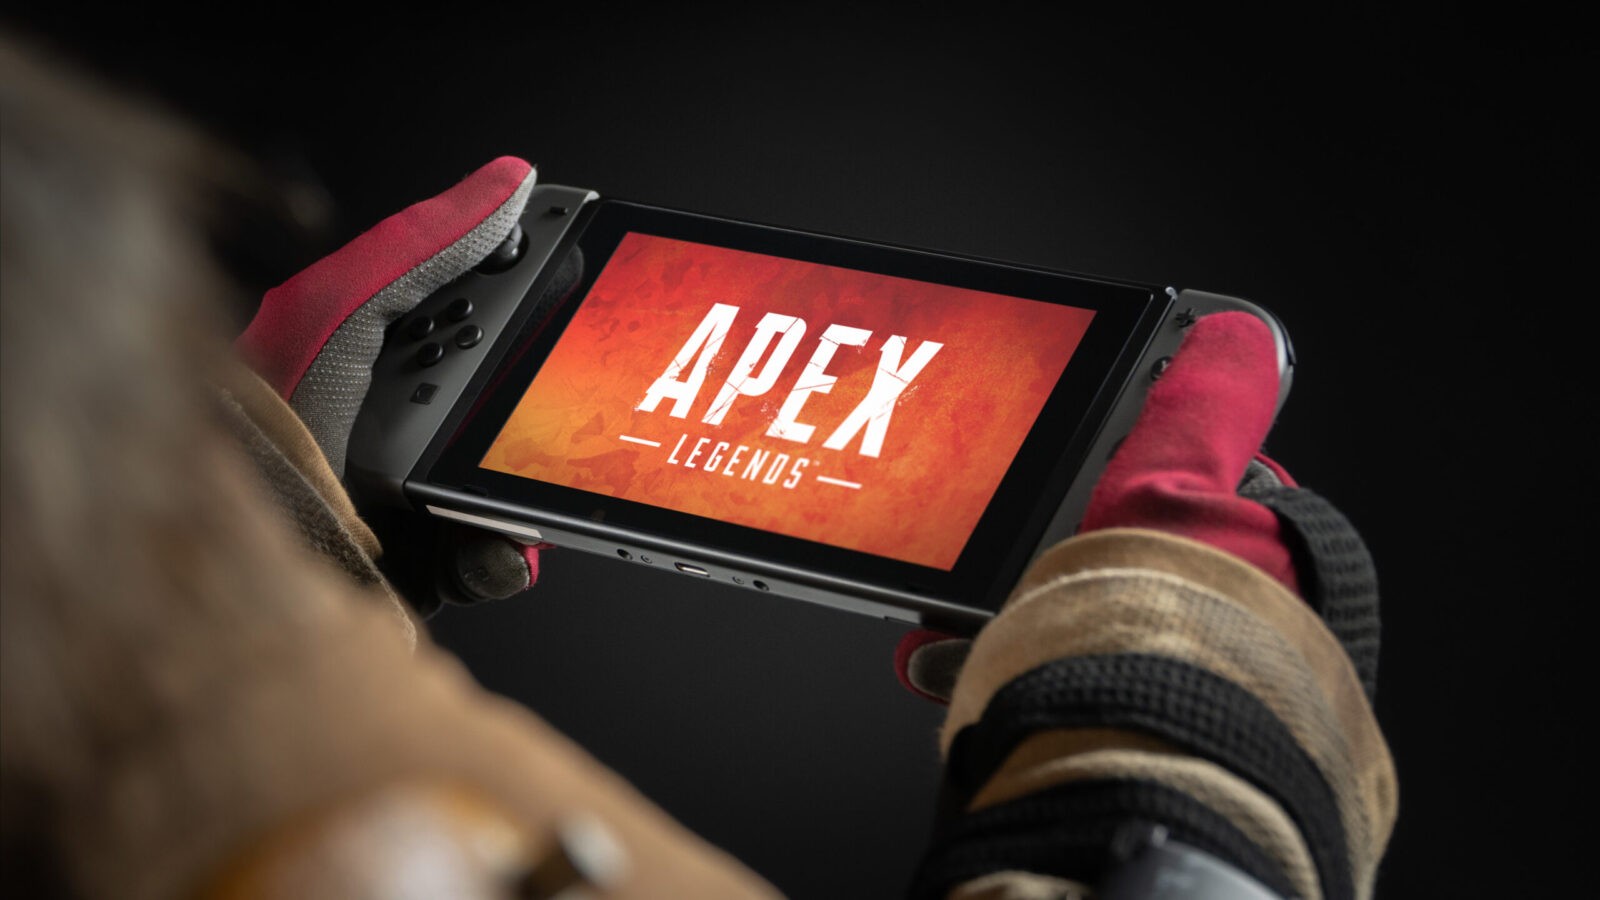 Apex Legend Mendapatkan Rating Untuk Nintendo Switch, Umumkan Championship Edition